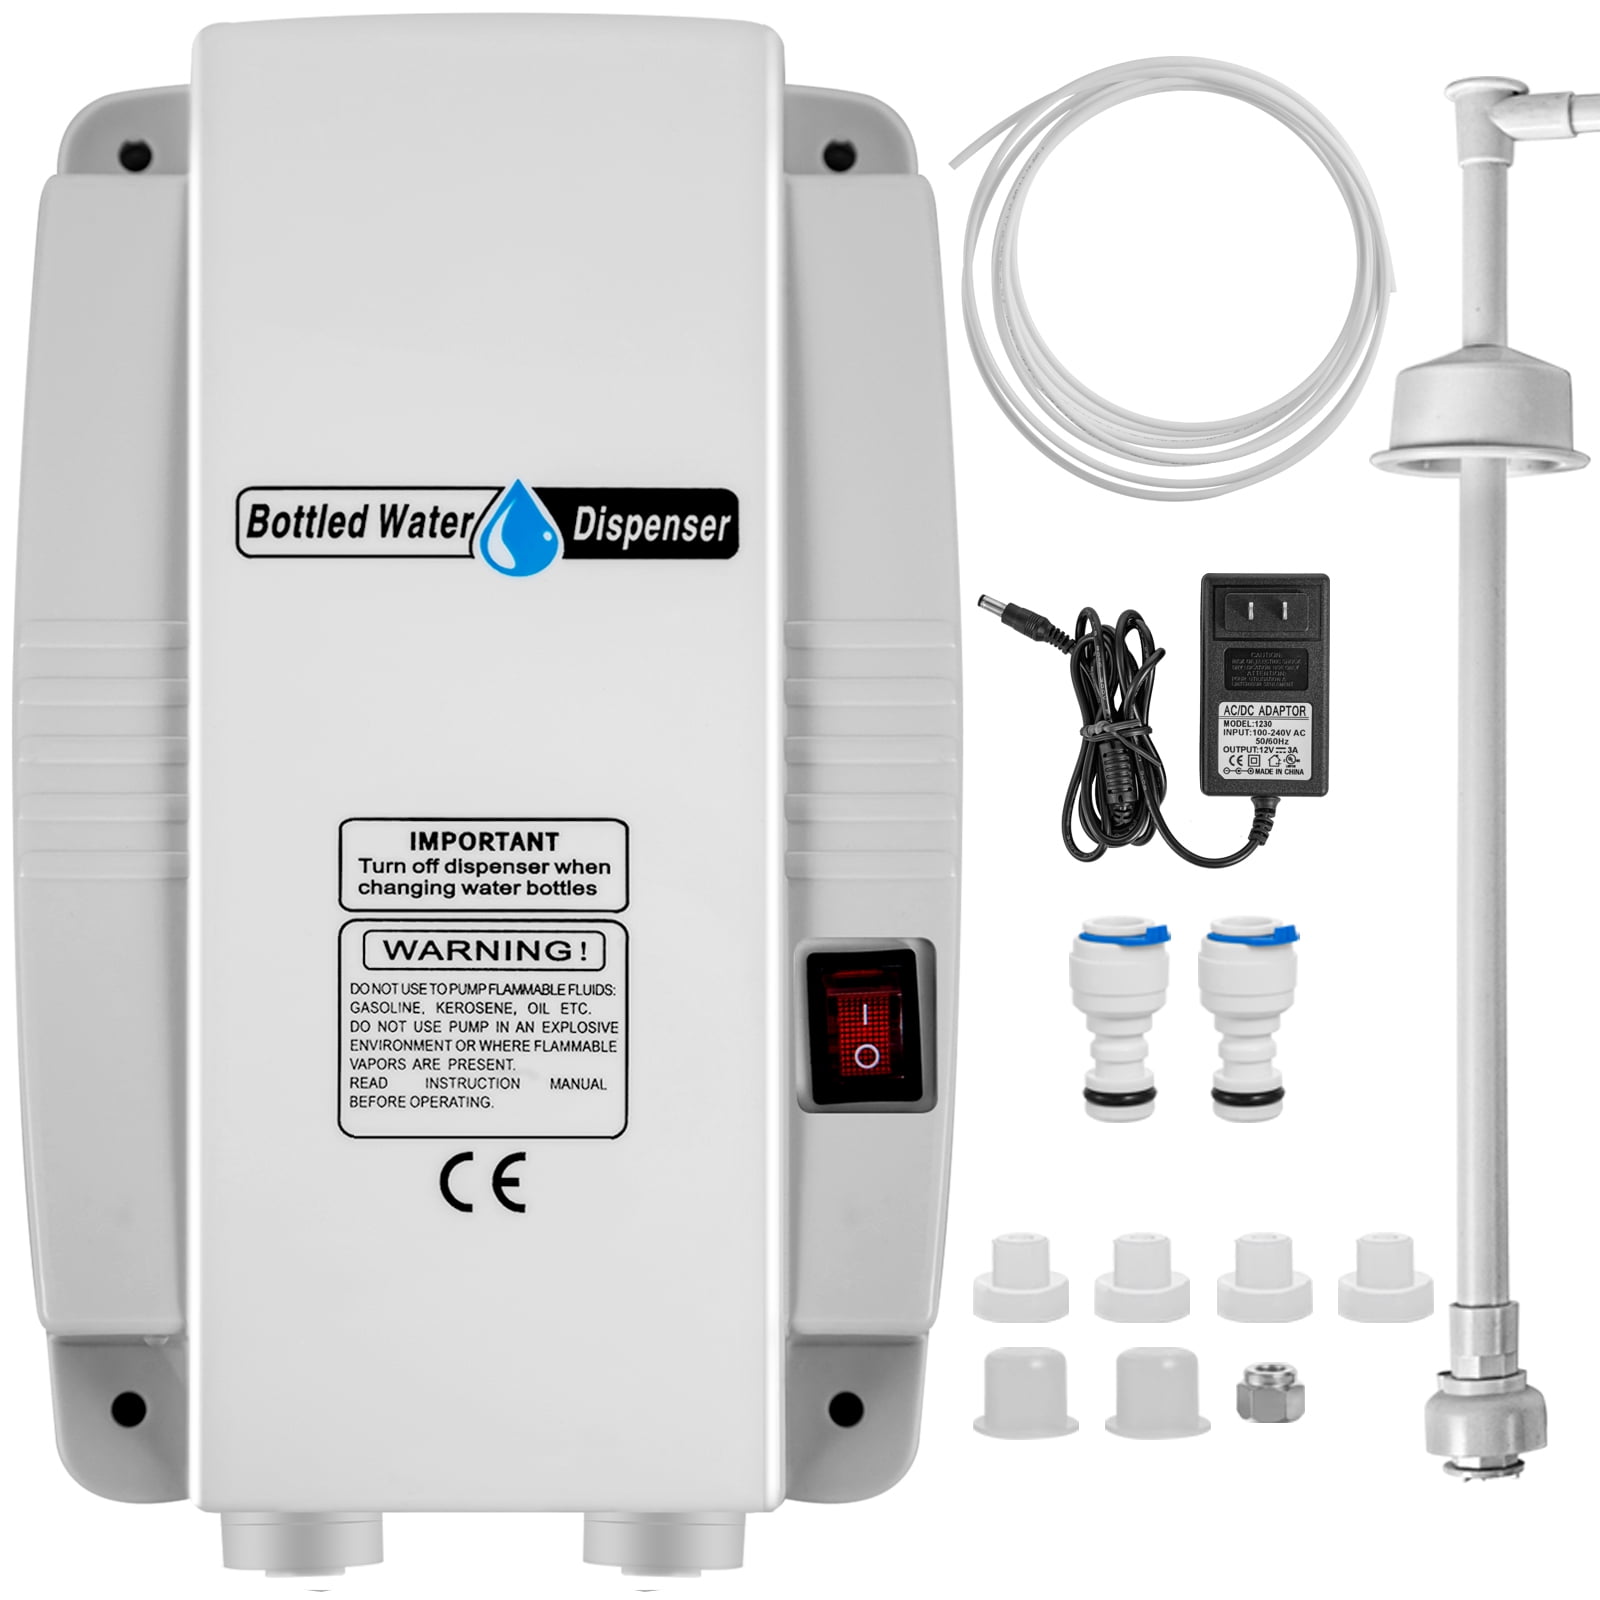 AC 110V 240V Electric Bottled Water Dispenser System For Household